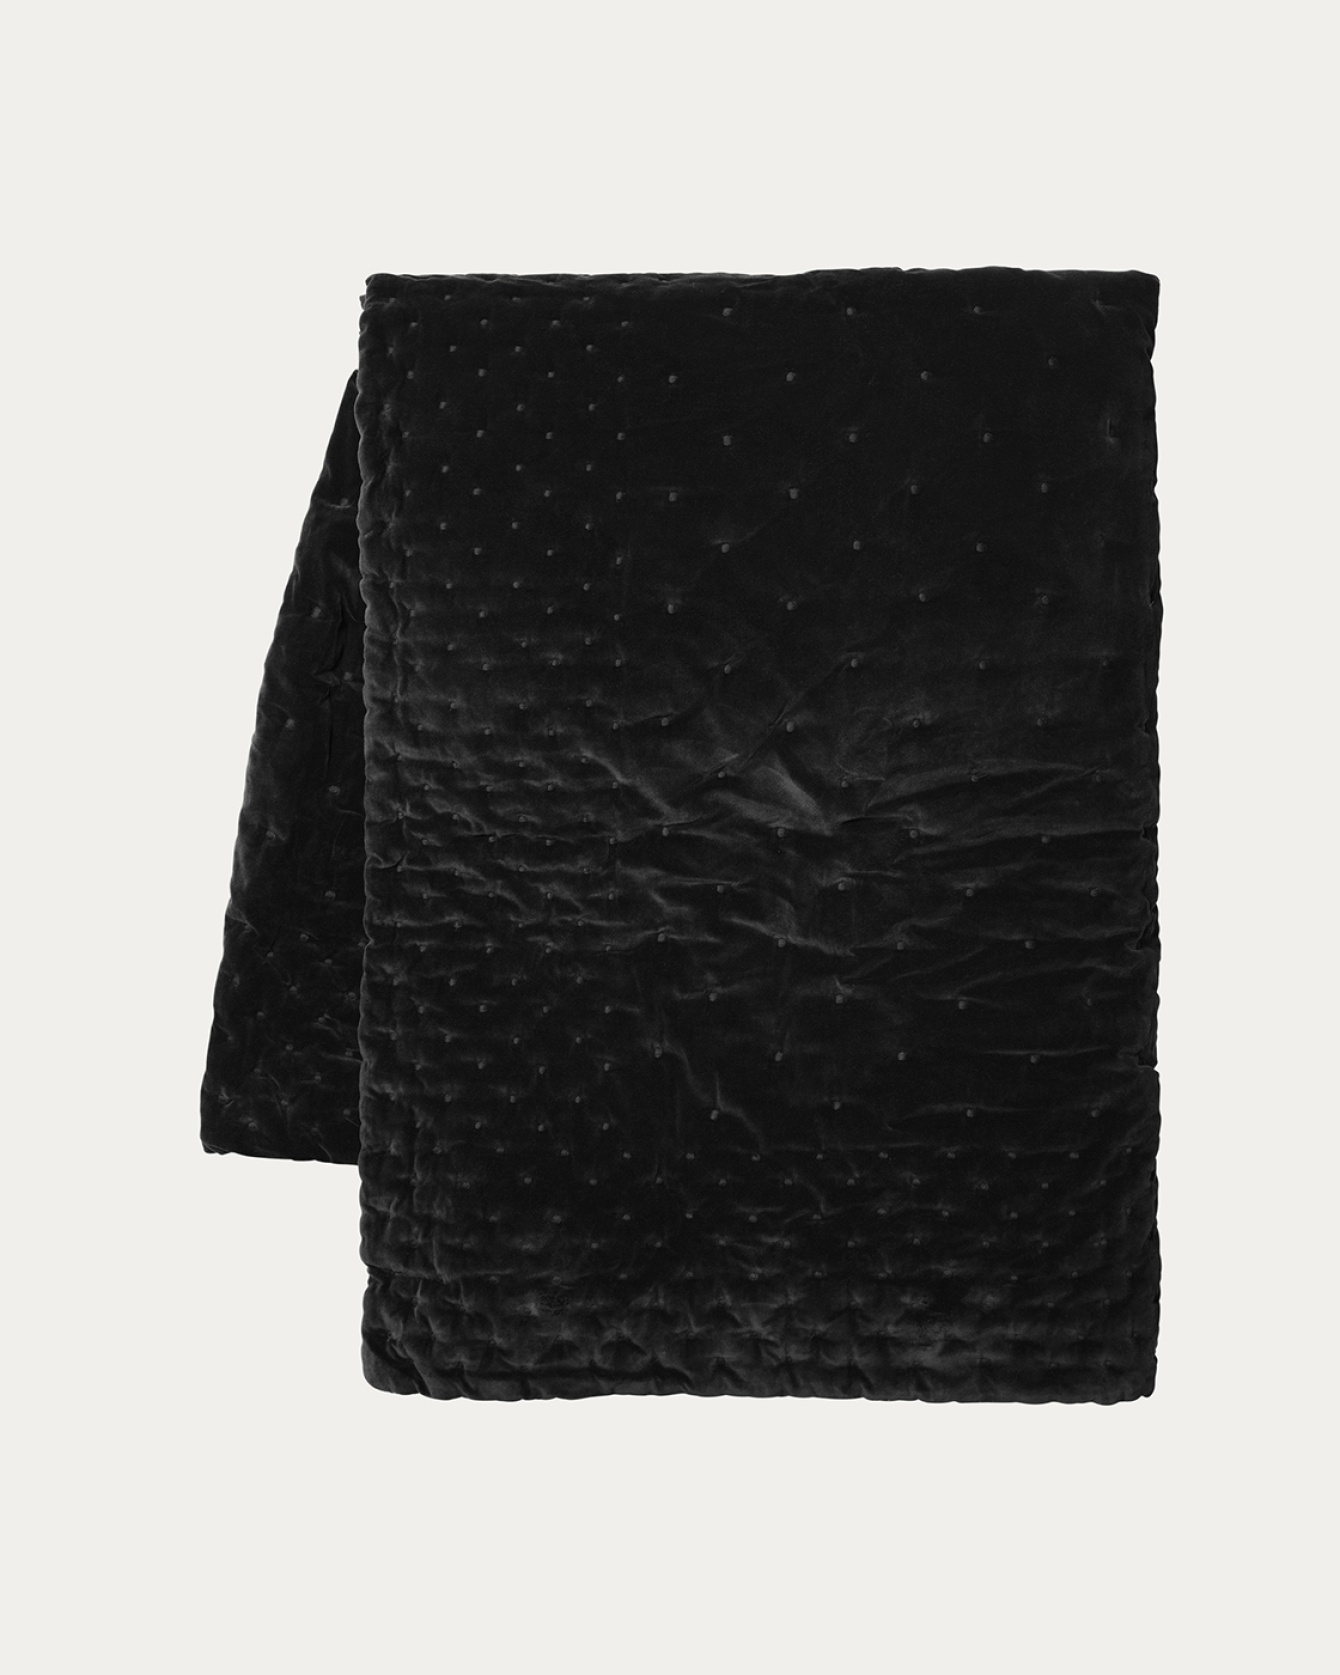 Produktbild schwarz Tagesdecke PAOLO aus weichem Samt aus bio-baumwolle für Doppelbett von LINUM DESIGN. Größe 270x260 cm.